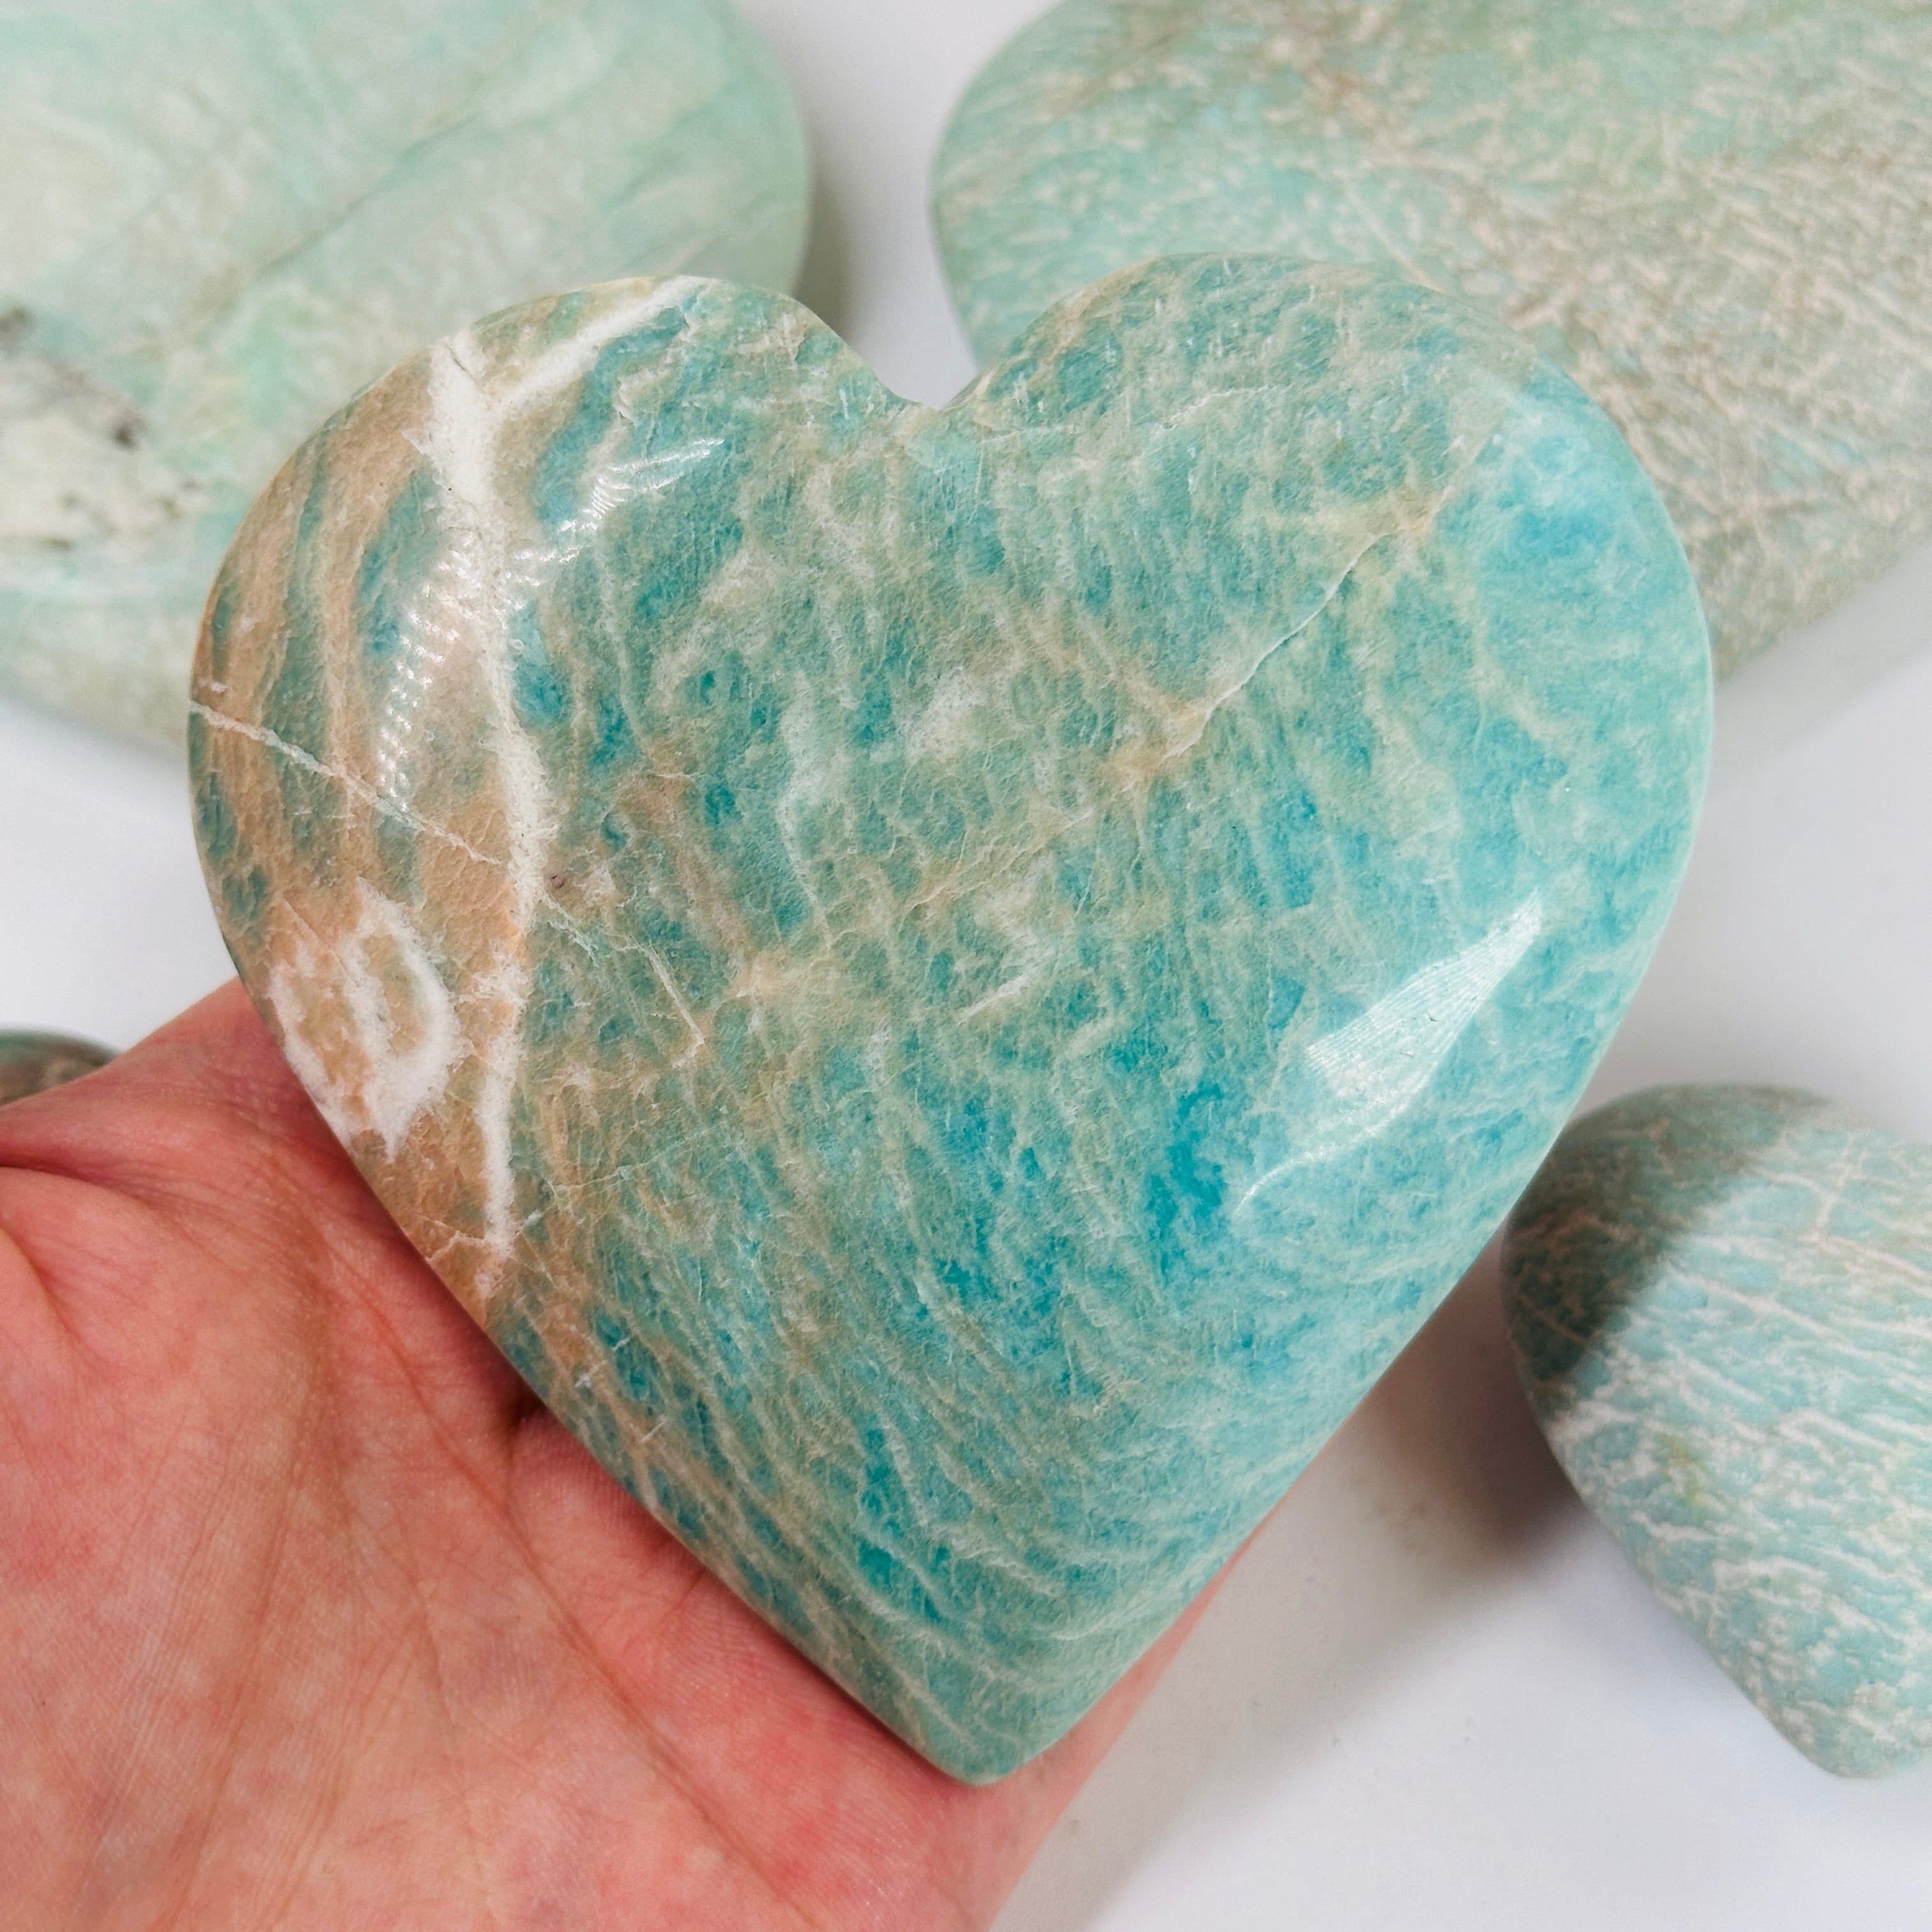 Blue Aragonite Hearts, Natural Gemstones Hearts, Healing Crystals Hearts –